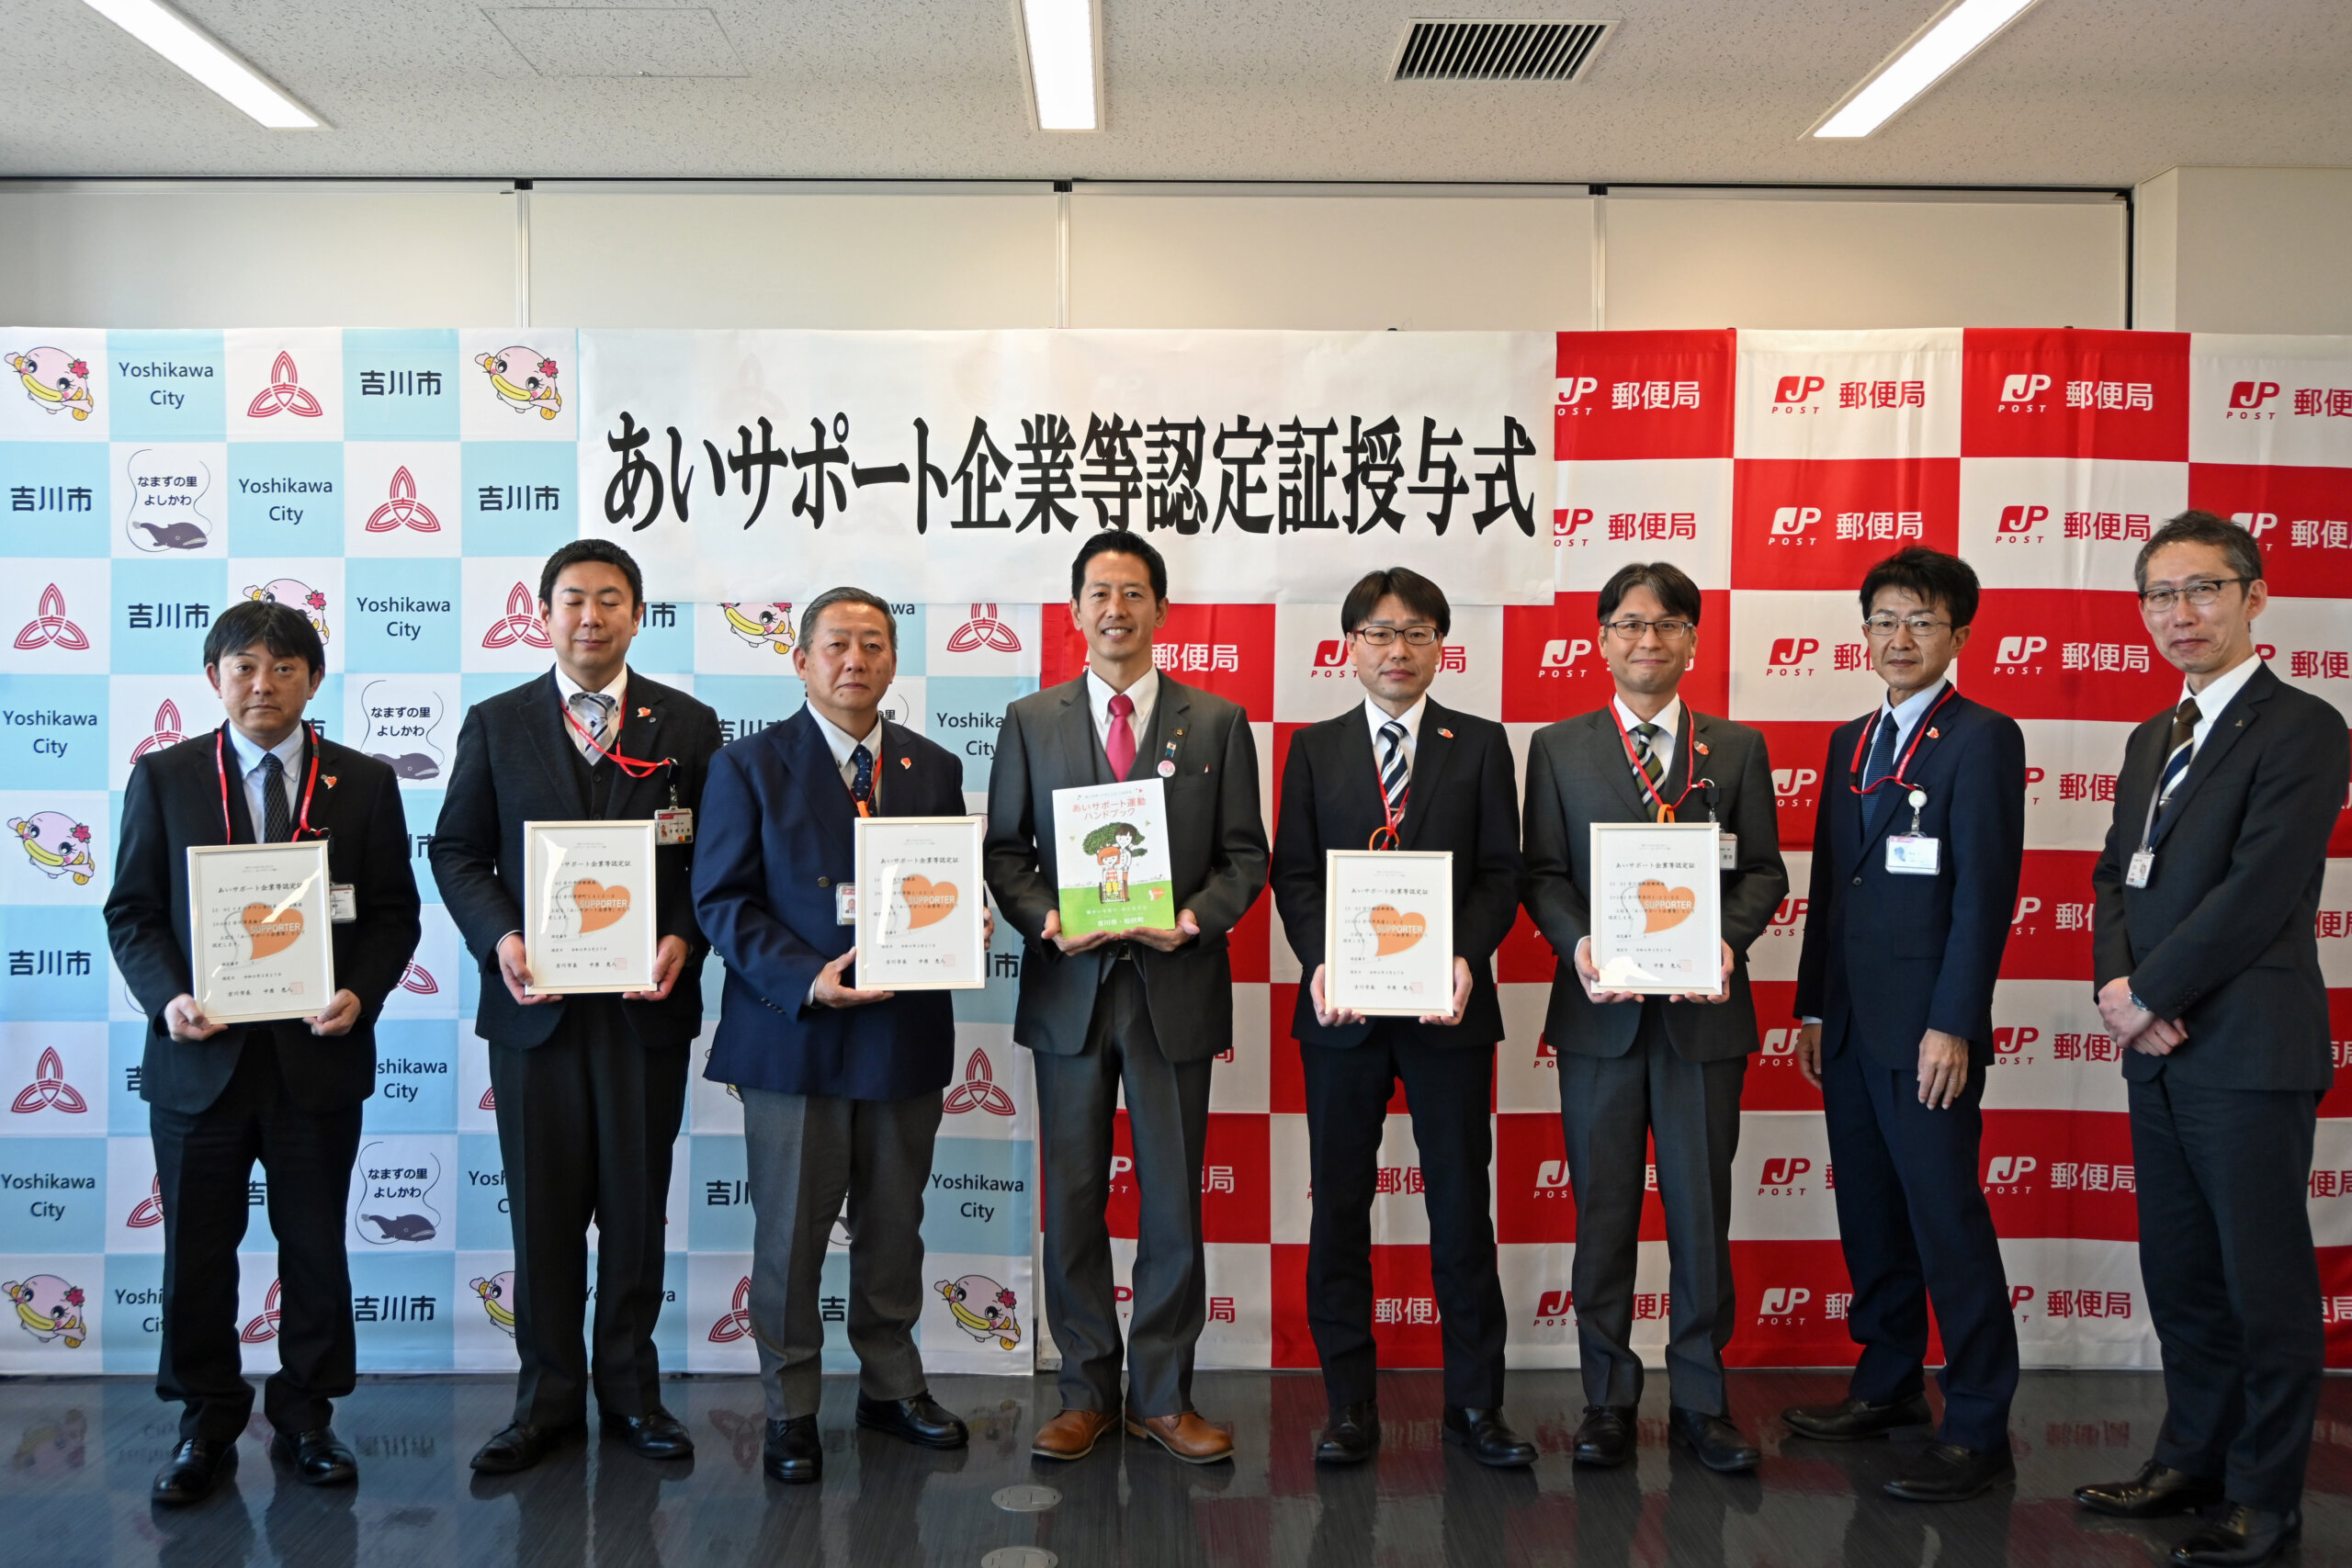 吉川市役所で行われた「あいサポート企業」認定書の授与式